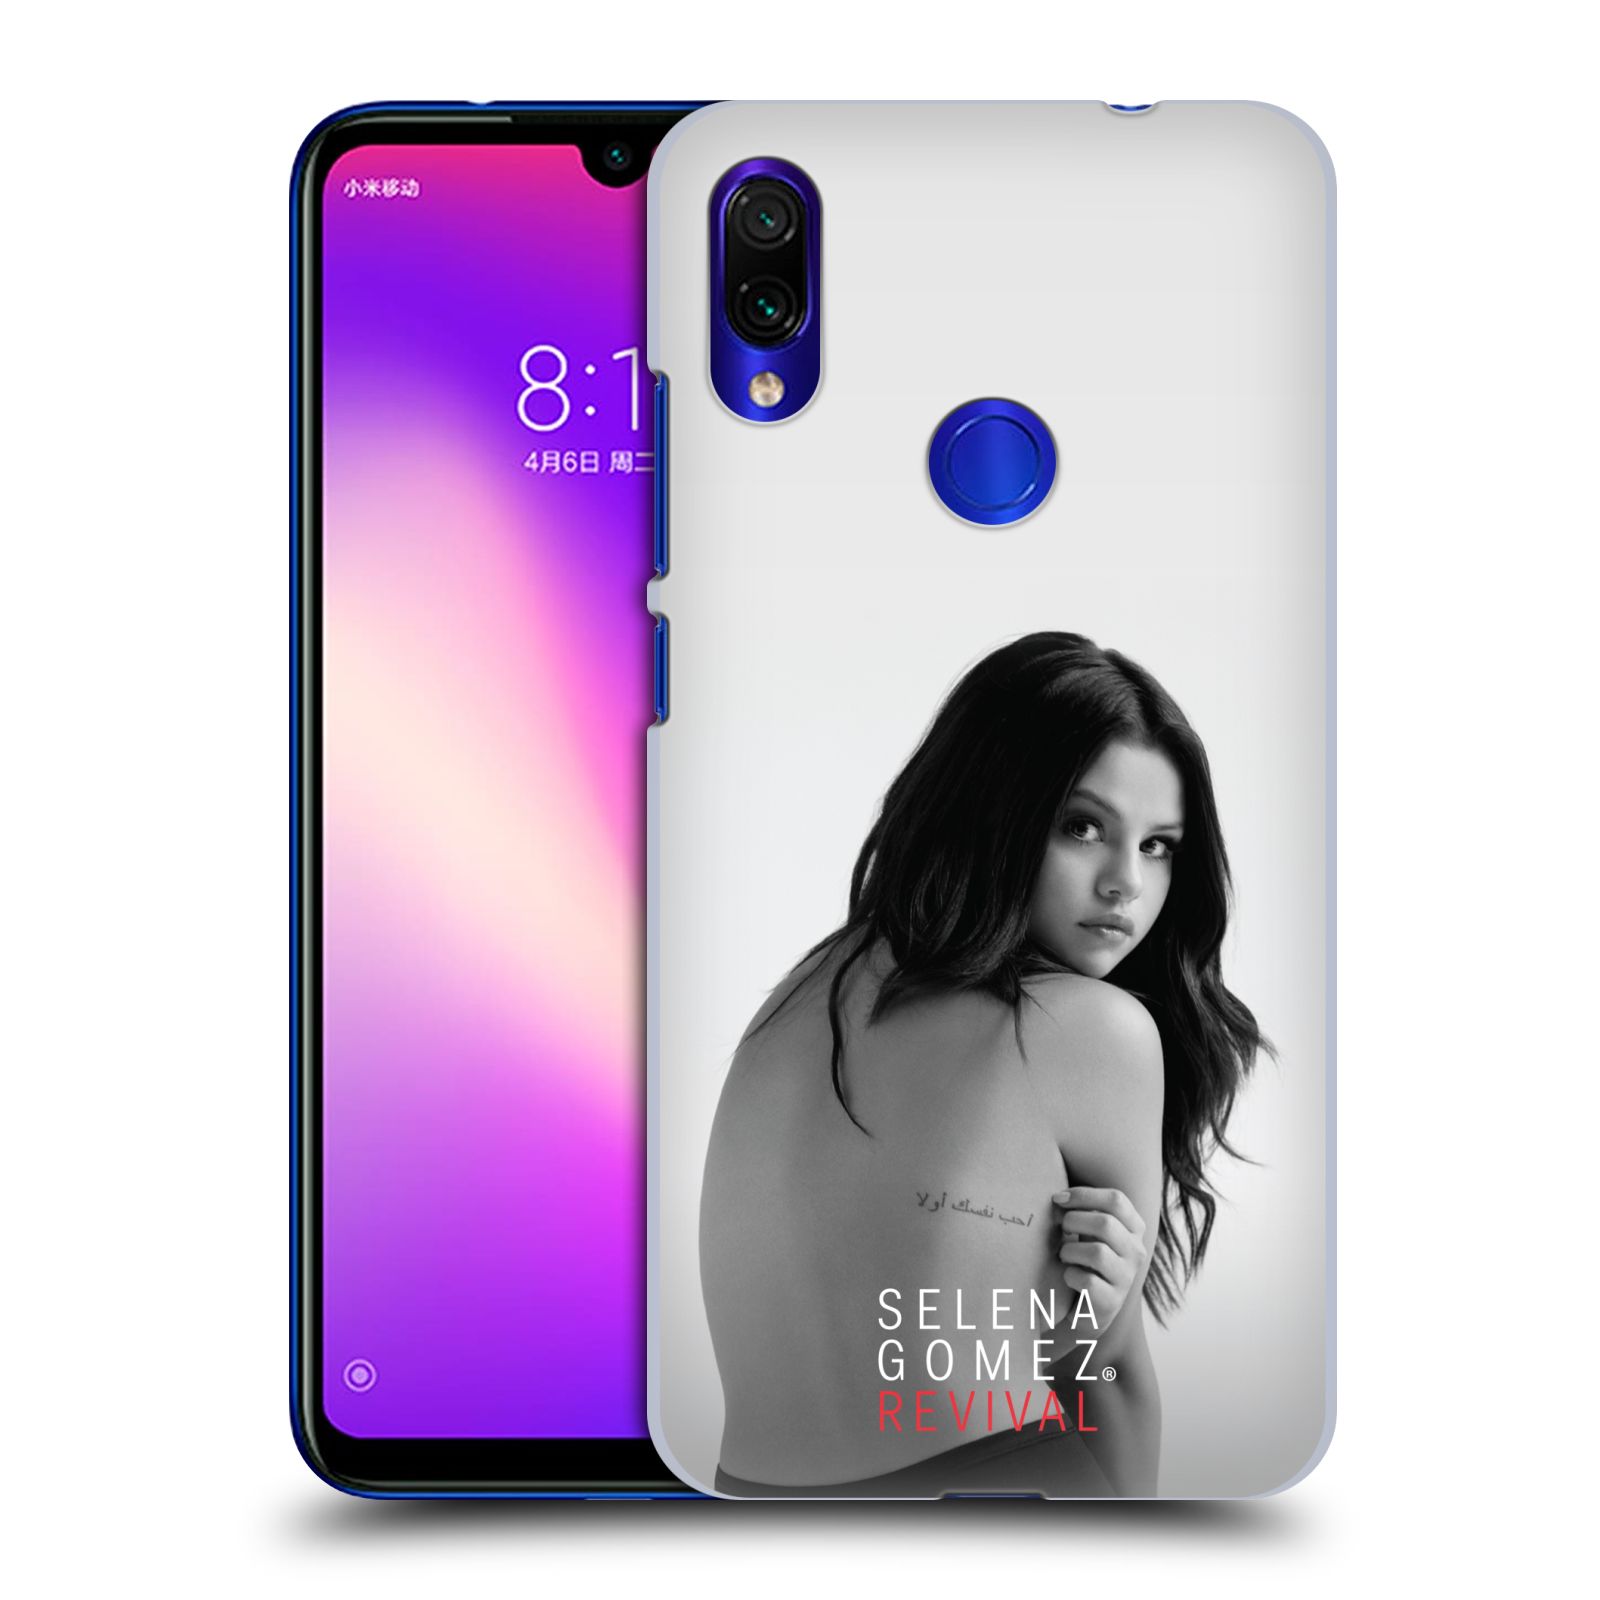 Pouzdro na mobil Xiaomi Redmi Note 7 - Head Case - Zpěvačka Selena Gomez foto Revival zadní strana